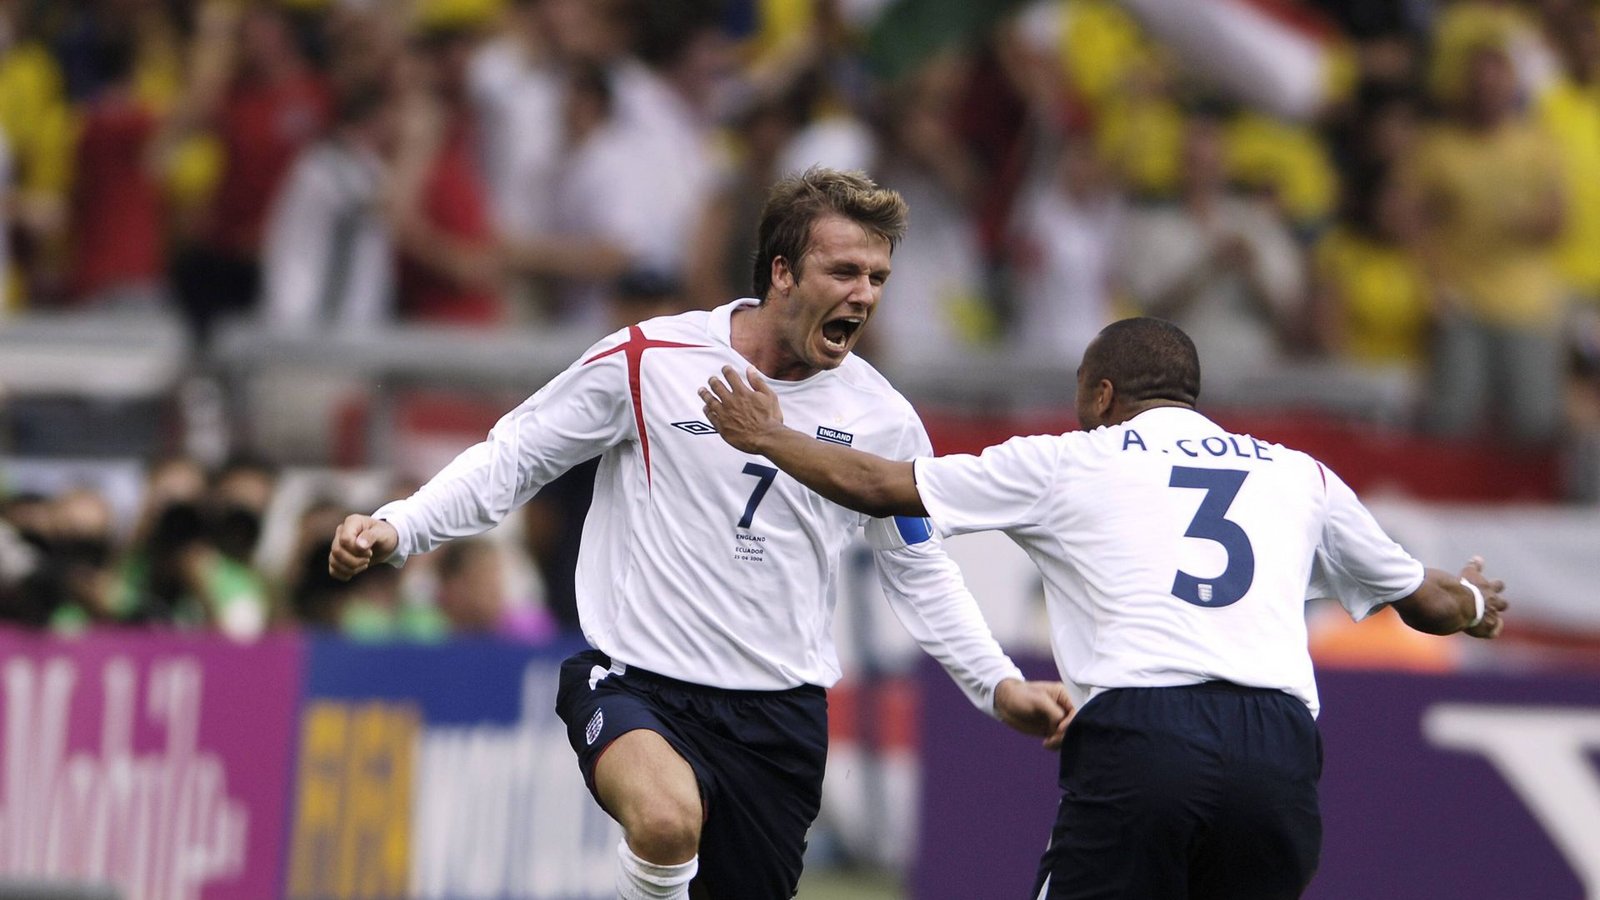 Im Achtelfinale gewinnt England mit 1:0 gegen Ecuador durch ein Tor von David Beckham.Foto: imago/Laci Perenyi